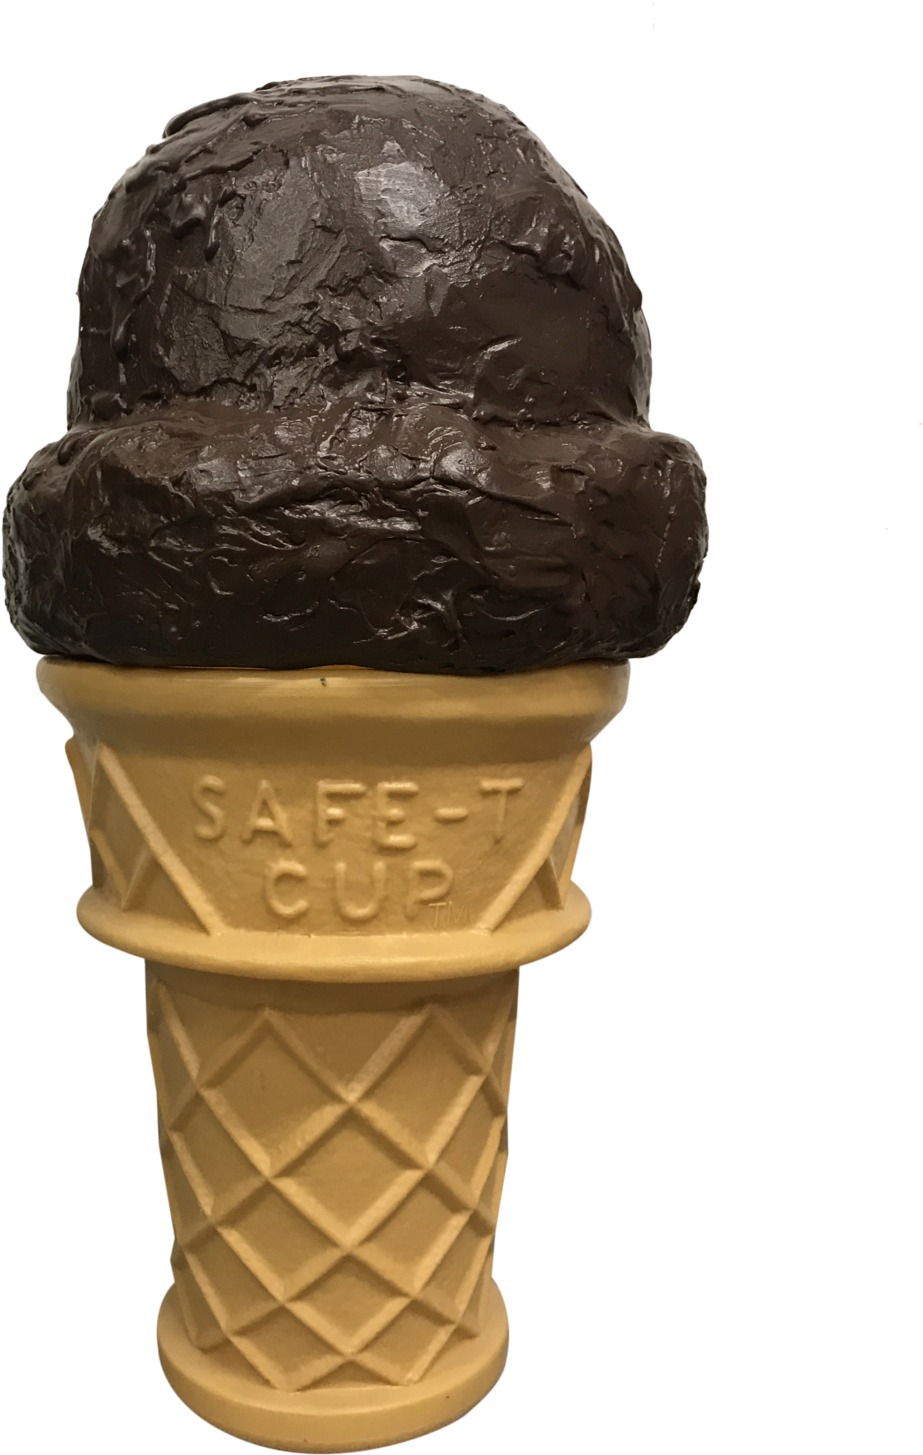 Chocolate Ice Cream Cone S A F T C U P PNG